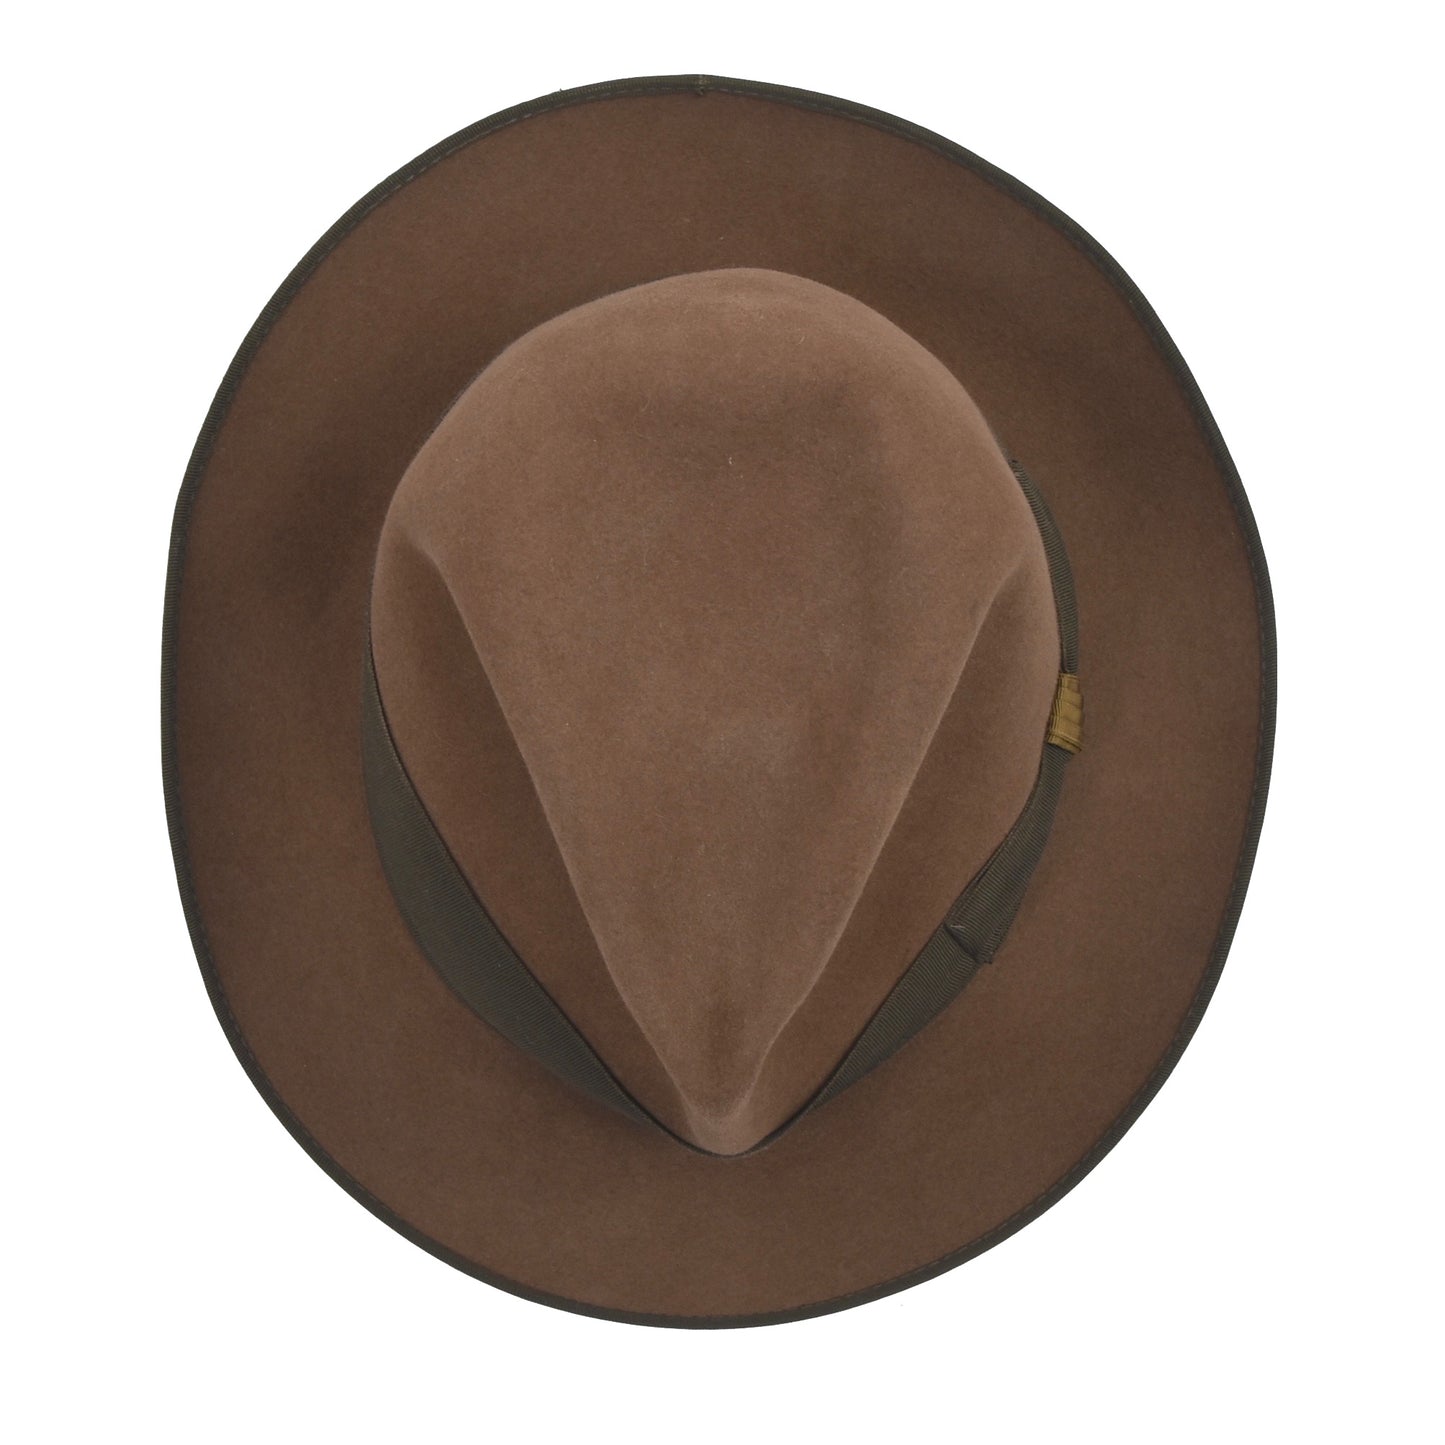 Royal Stetson Hampton Felt Hat 6.3cm Brim Size 56 - Tan/Brown